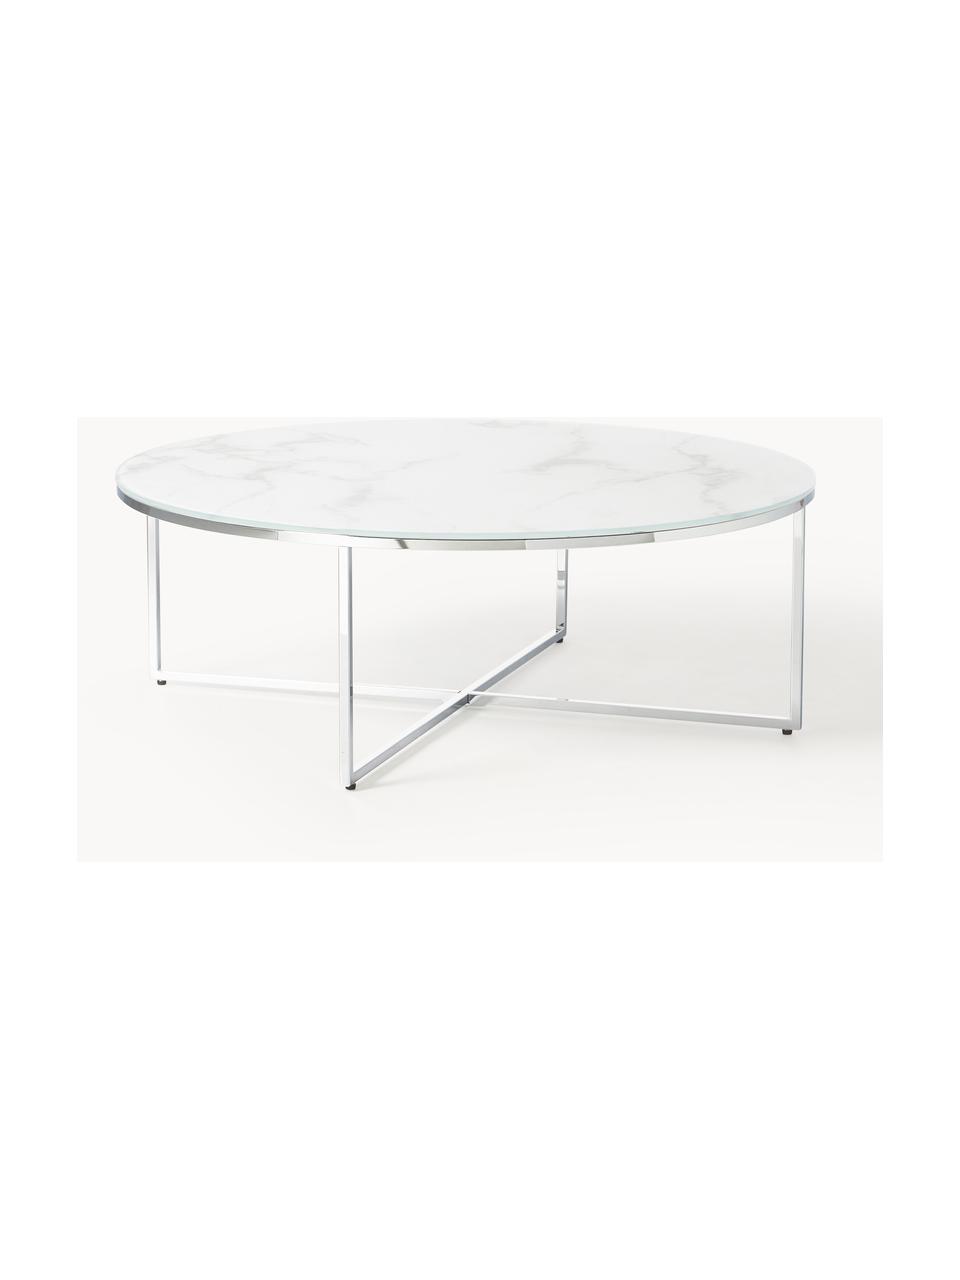 Runder XL-Couchtisch Antigua mit Glasplatte in Marmor-Optik, Tischplatte: Glas, matt bedruckt, Gestell: Metall, verchromt, Marmor-Optik Weiß, Silberfarben glänzend, Ø 100 cm